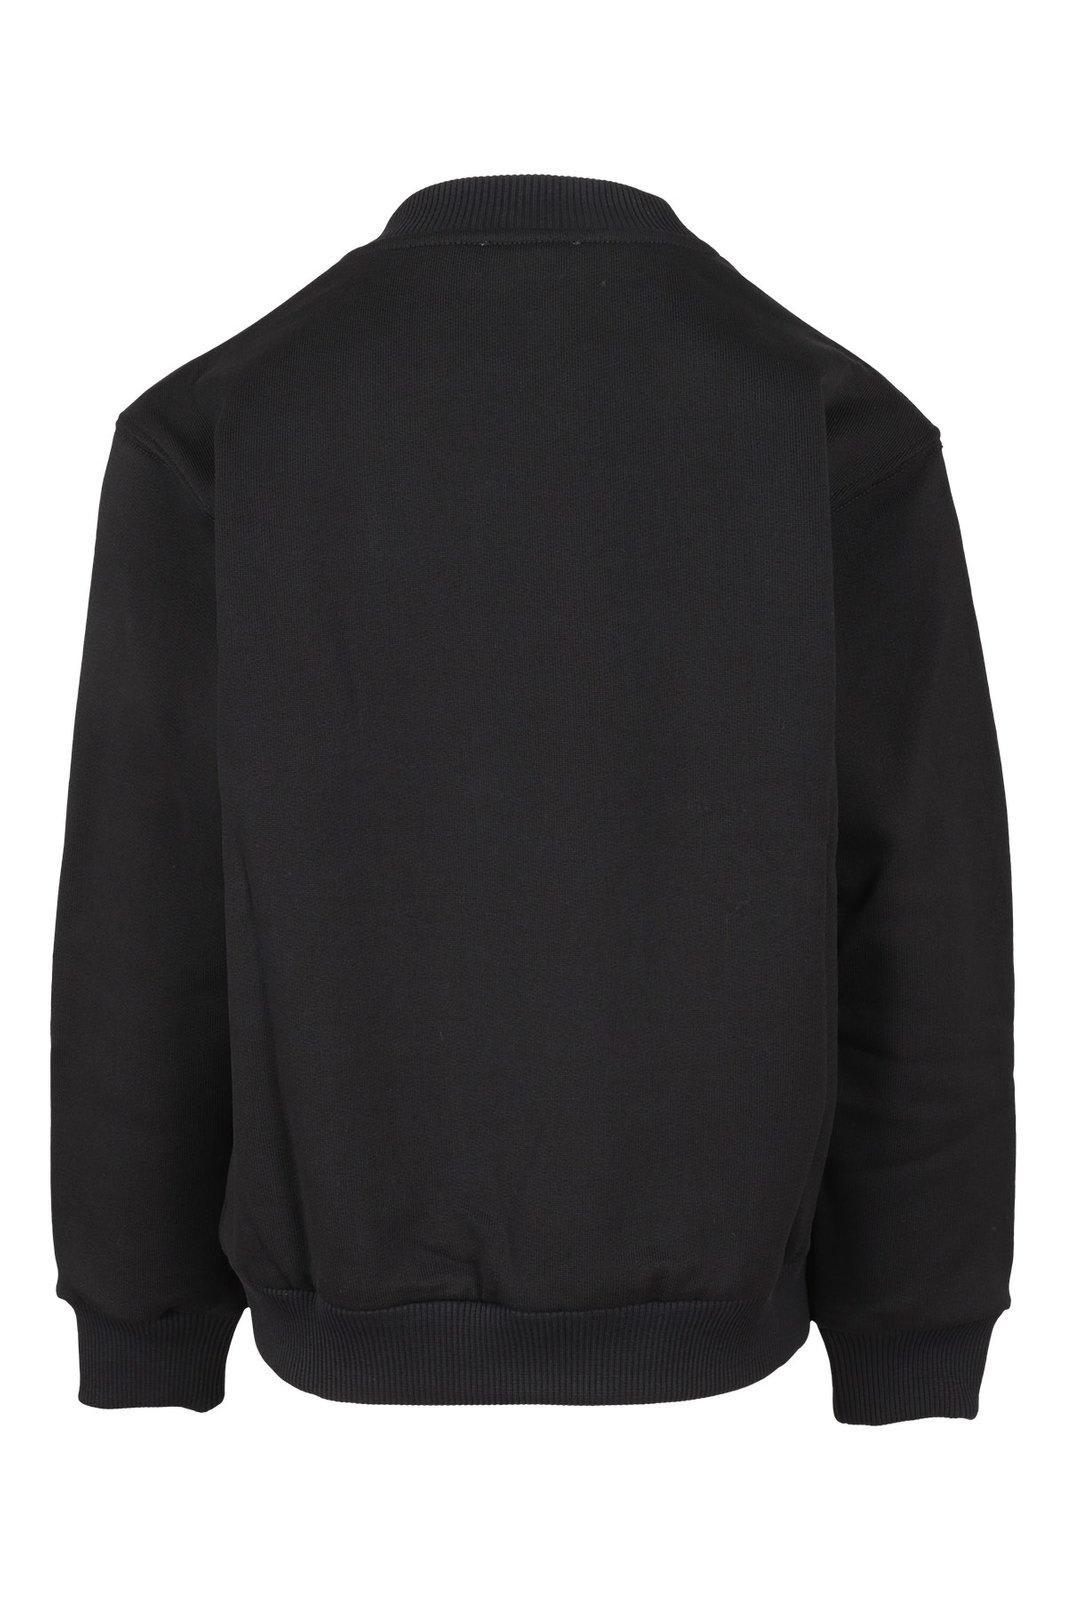 Shop Dolce & Gabbana Logo Embroidered Crewneck Sweatshirt In Nero